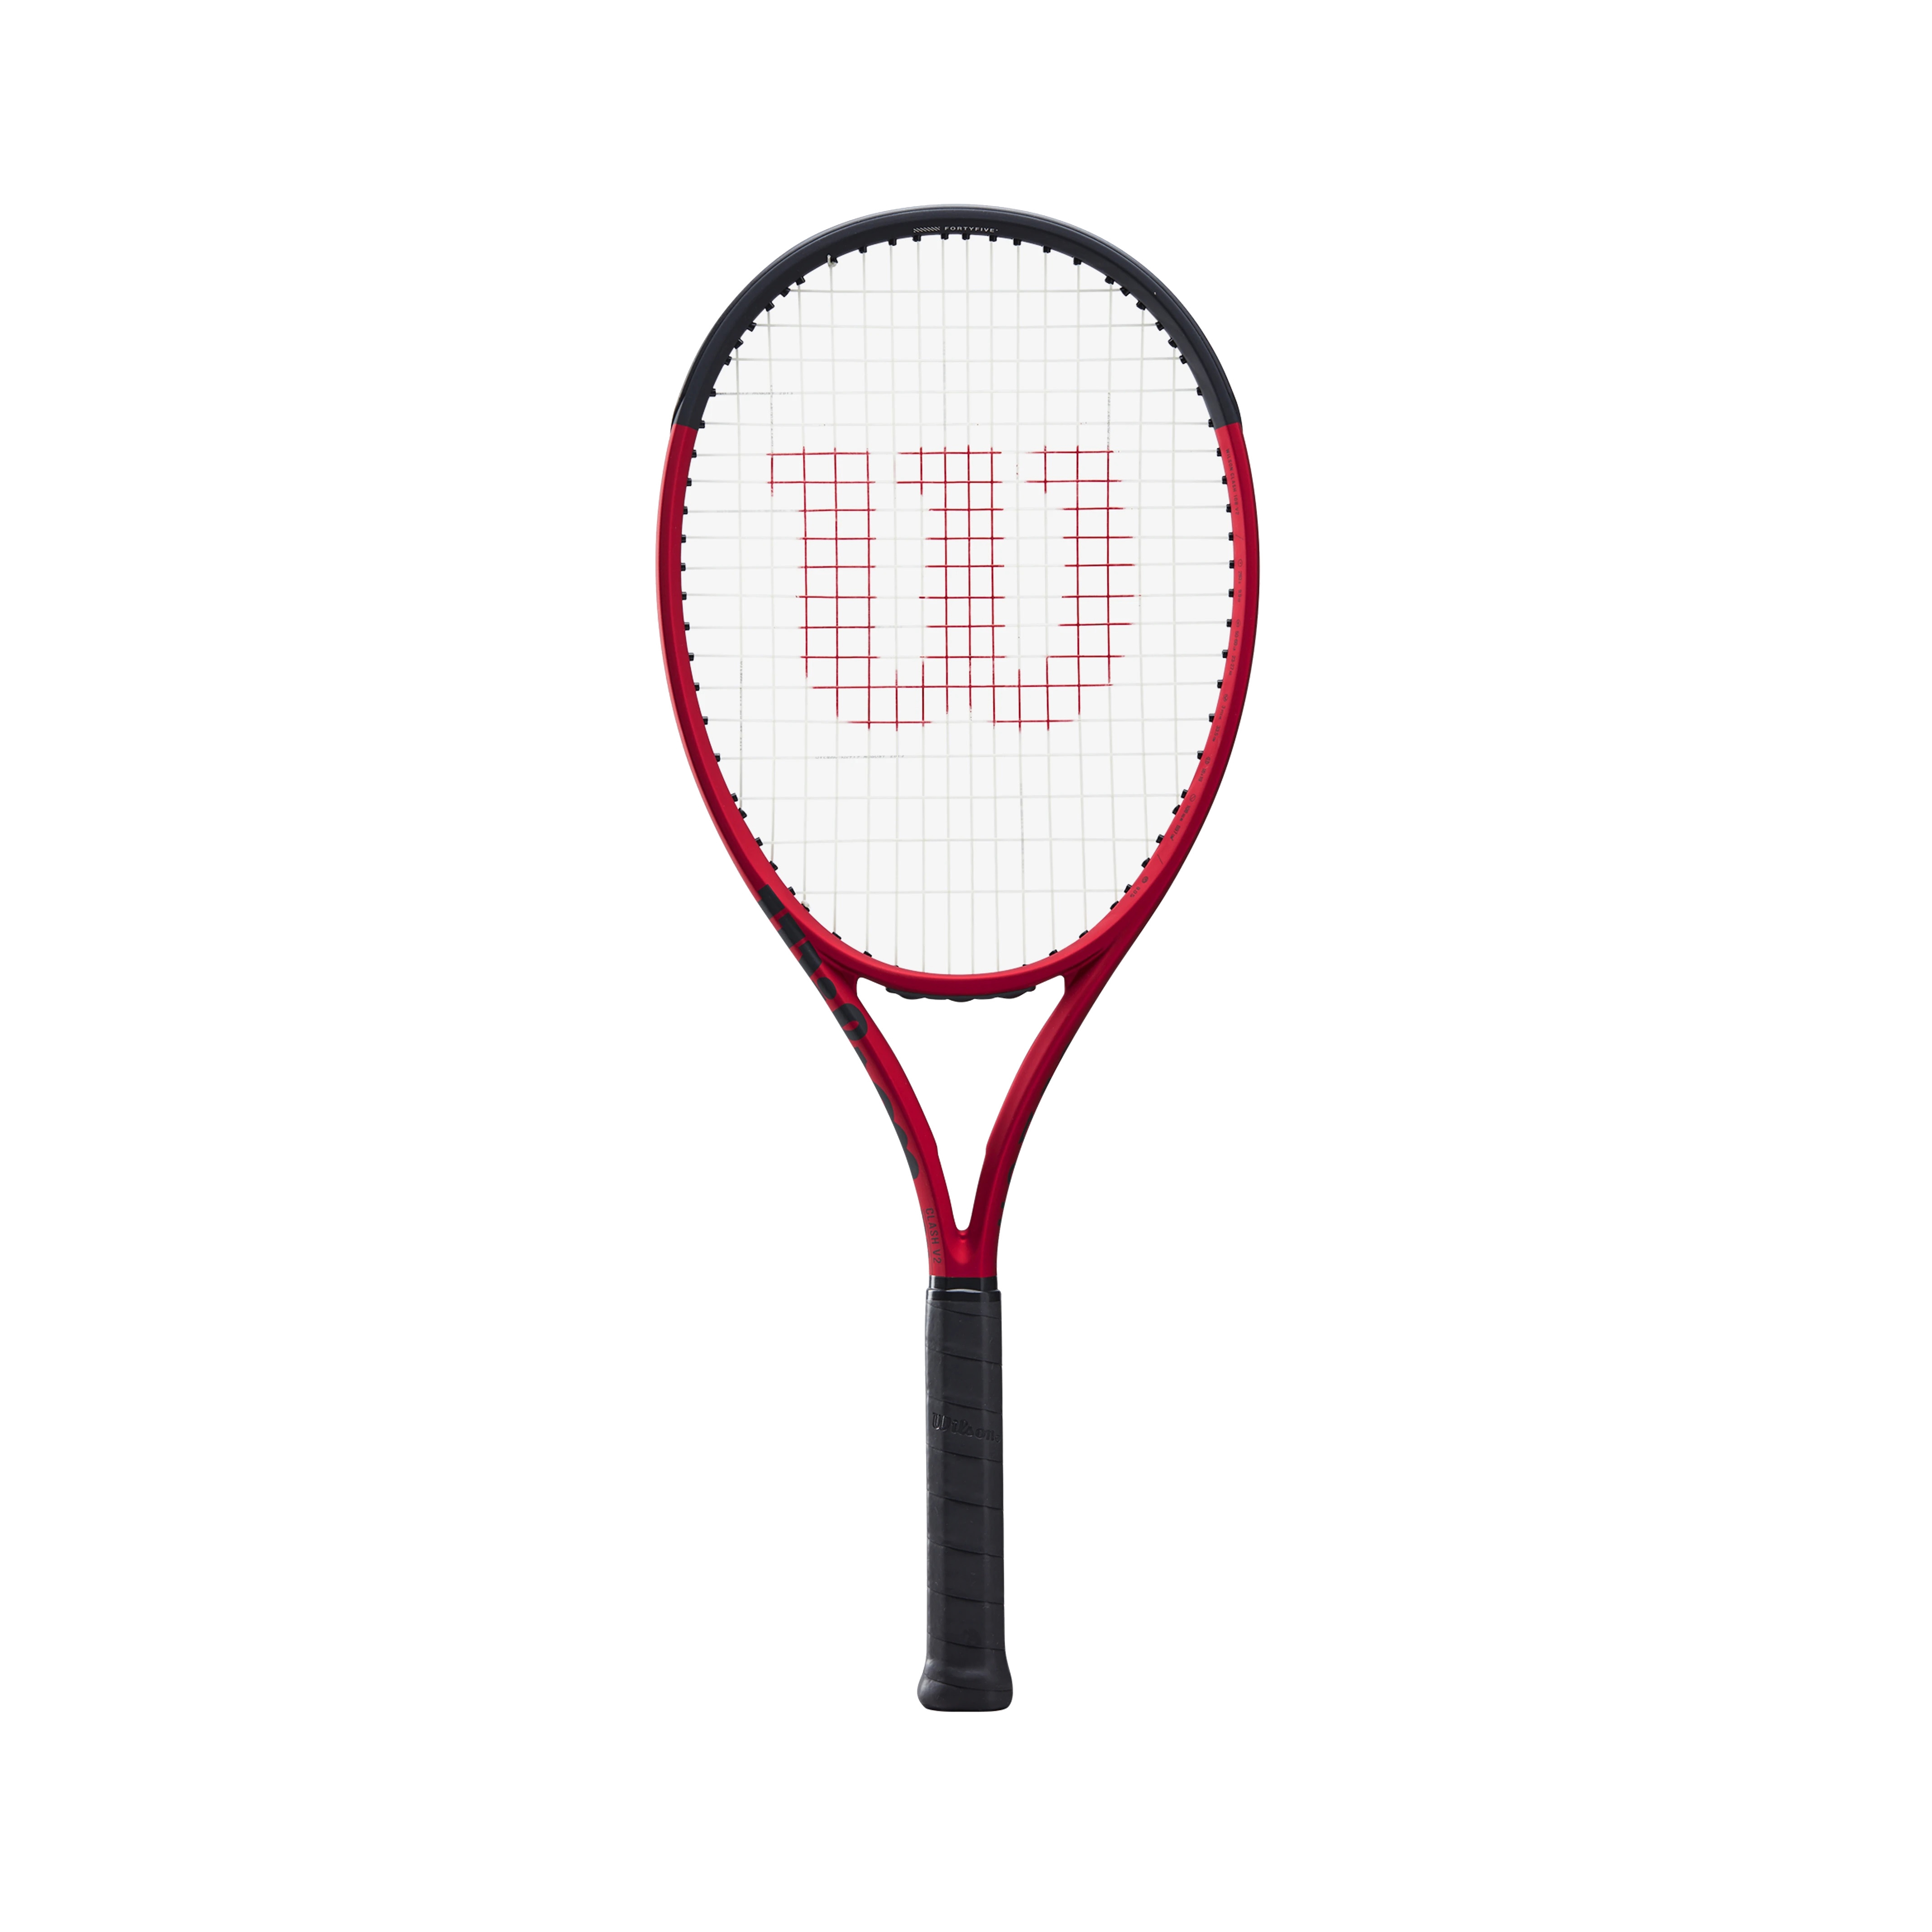 New Wilson CLASH 108 Tennis Racquet 16x19 Grip sz 4 1/4 & 4 3/8" 